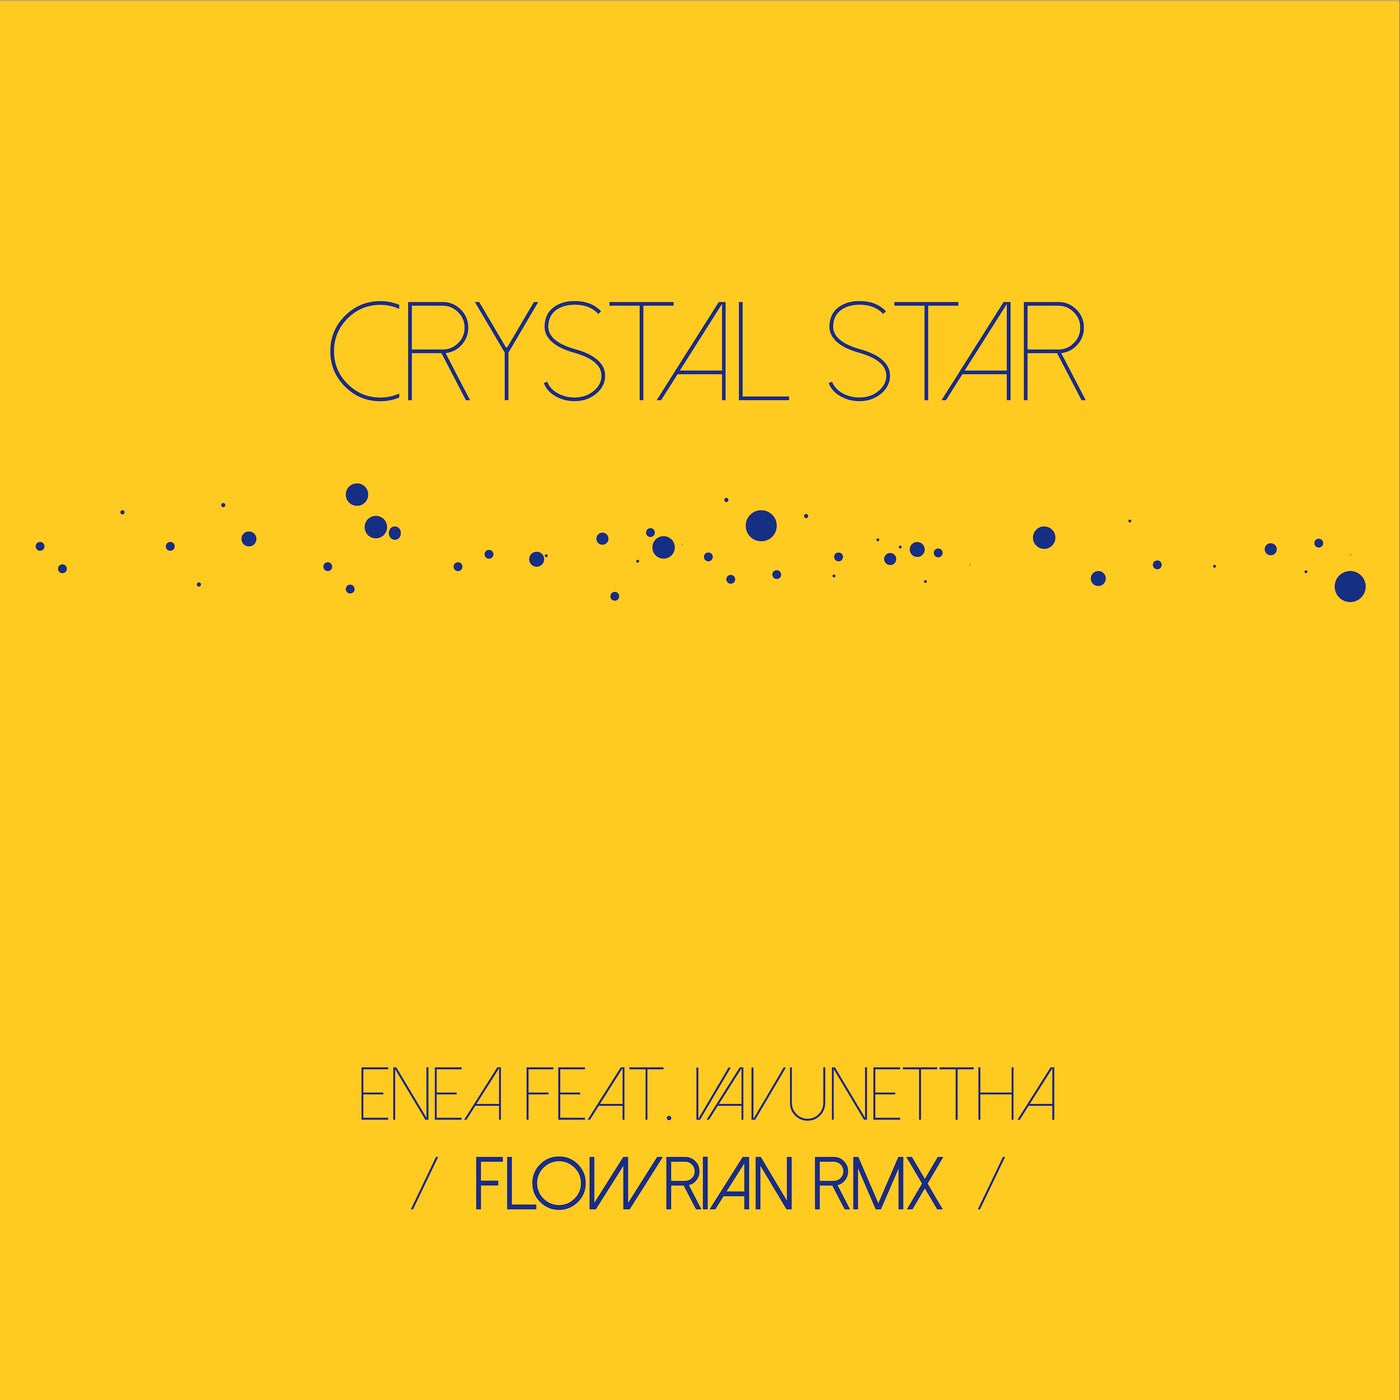 Crystal Star (Flowrian Rmx) - Flowrian Rmx